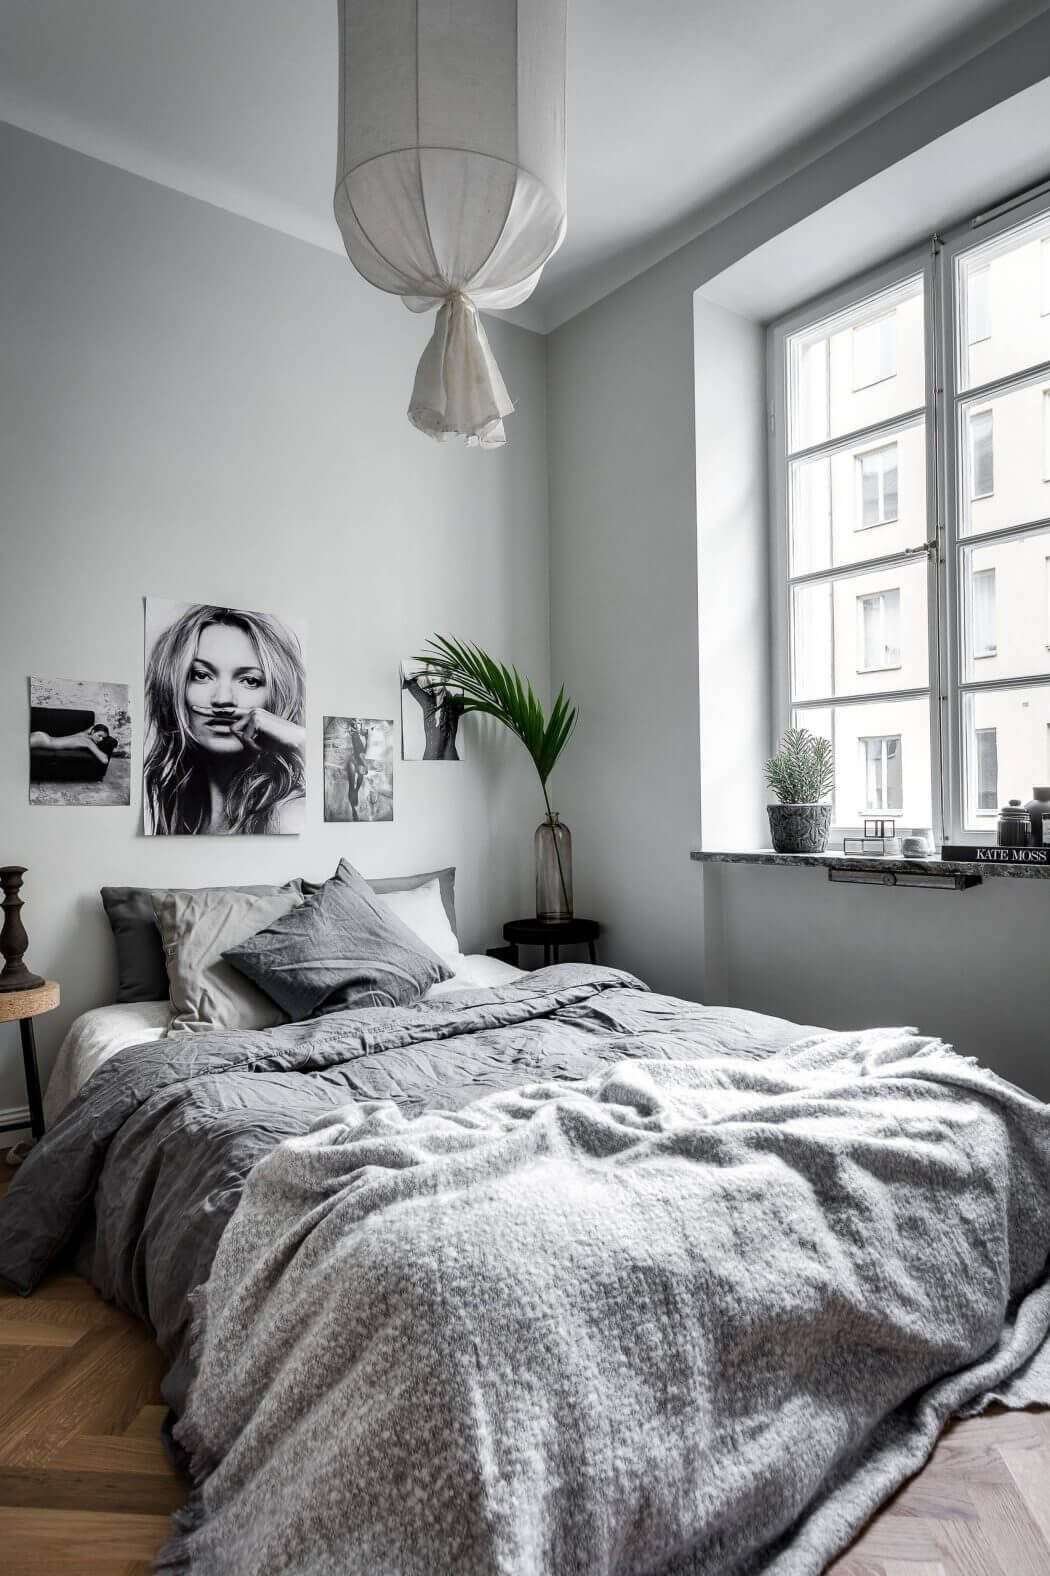 черно-белые фотографии на стене в изголовье кровати